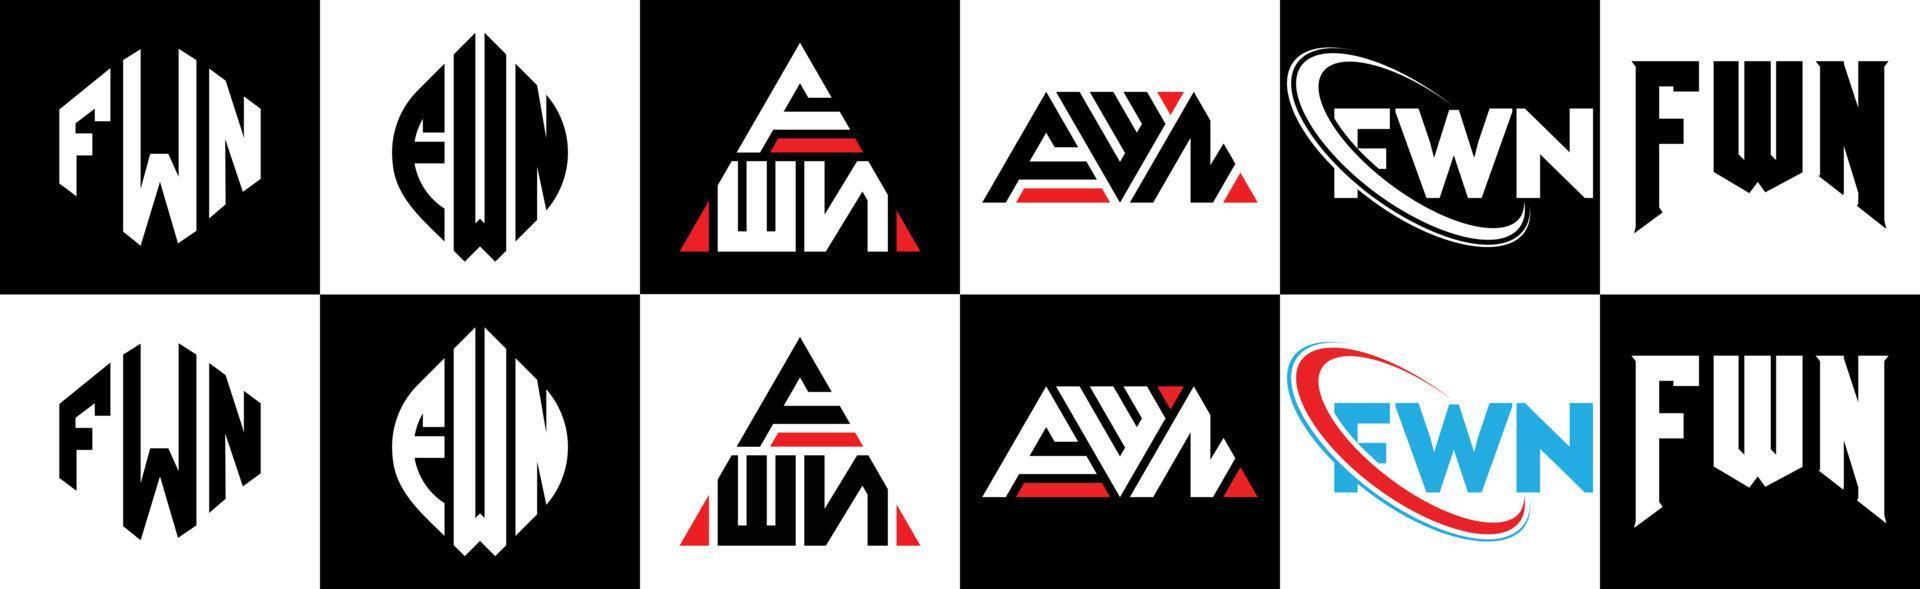 création de logo de lettre fwn en six styles. fwn polygone, cercle, triangle, hexagone, style plat et simple avec logo de lettre de variation de couleur noir et blanc dans un plan de travail. fwn logo minimaliste et classique vecteur